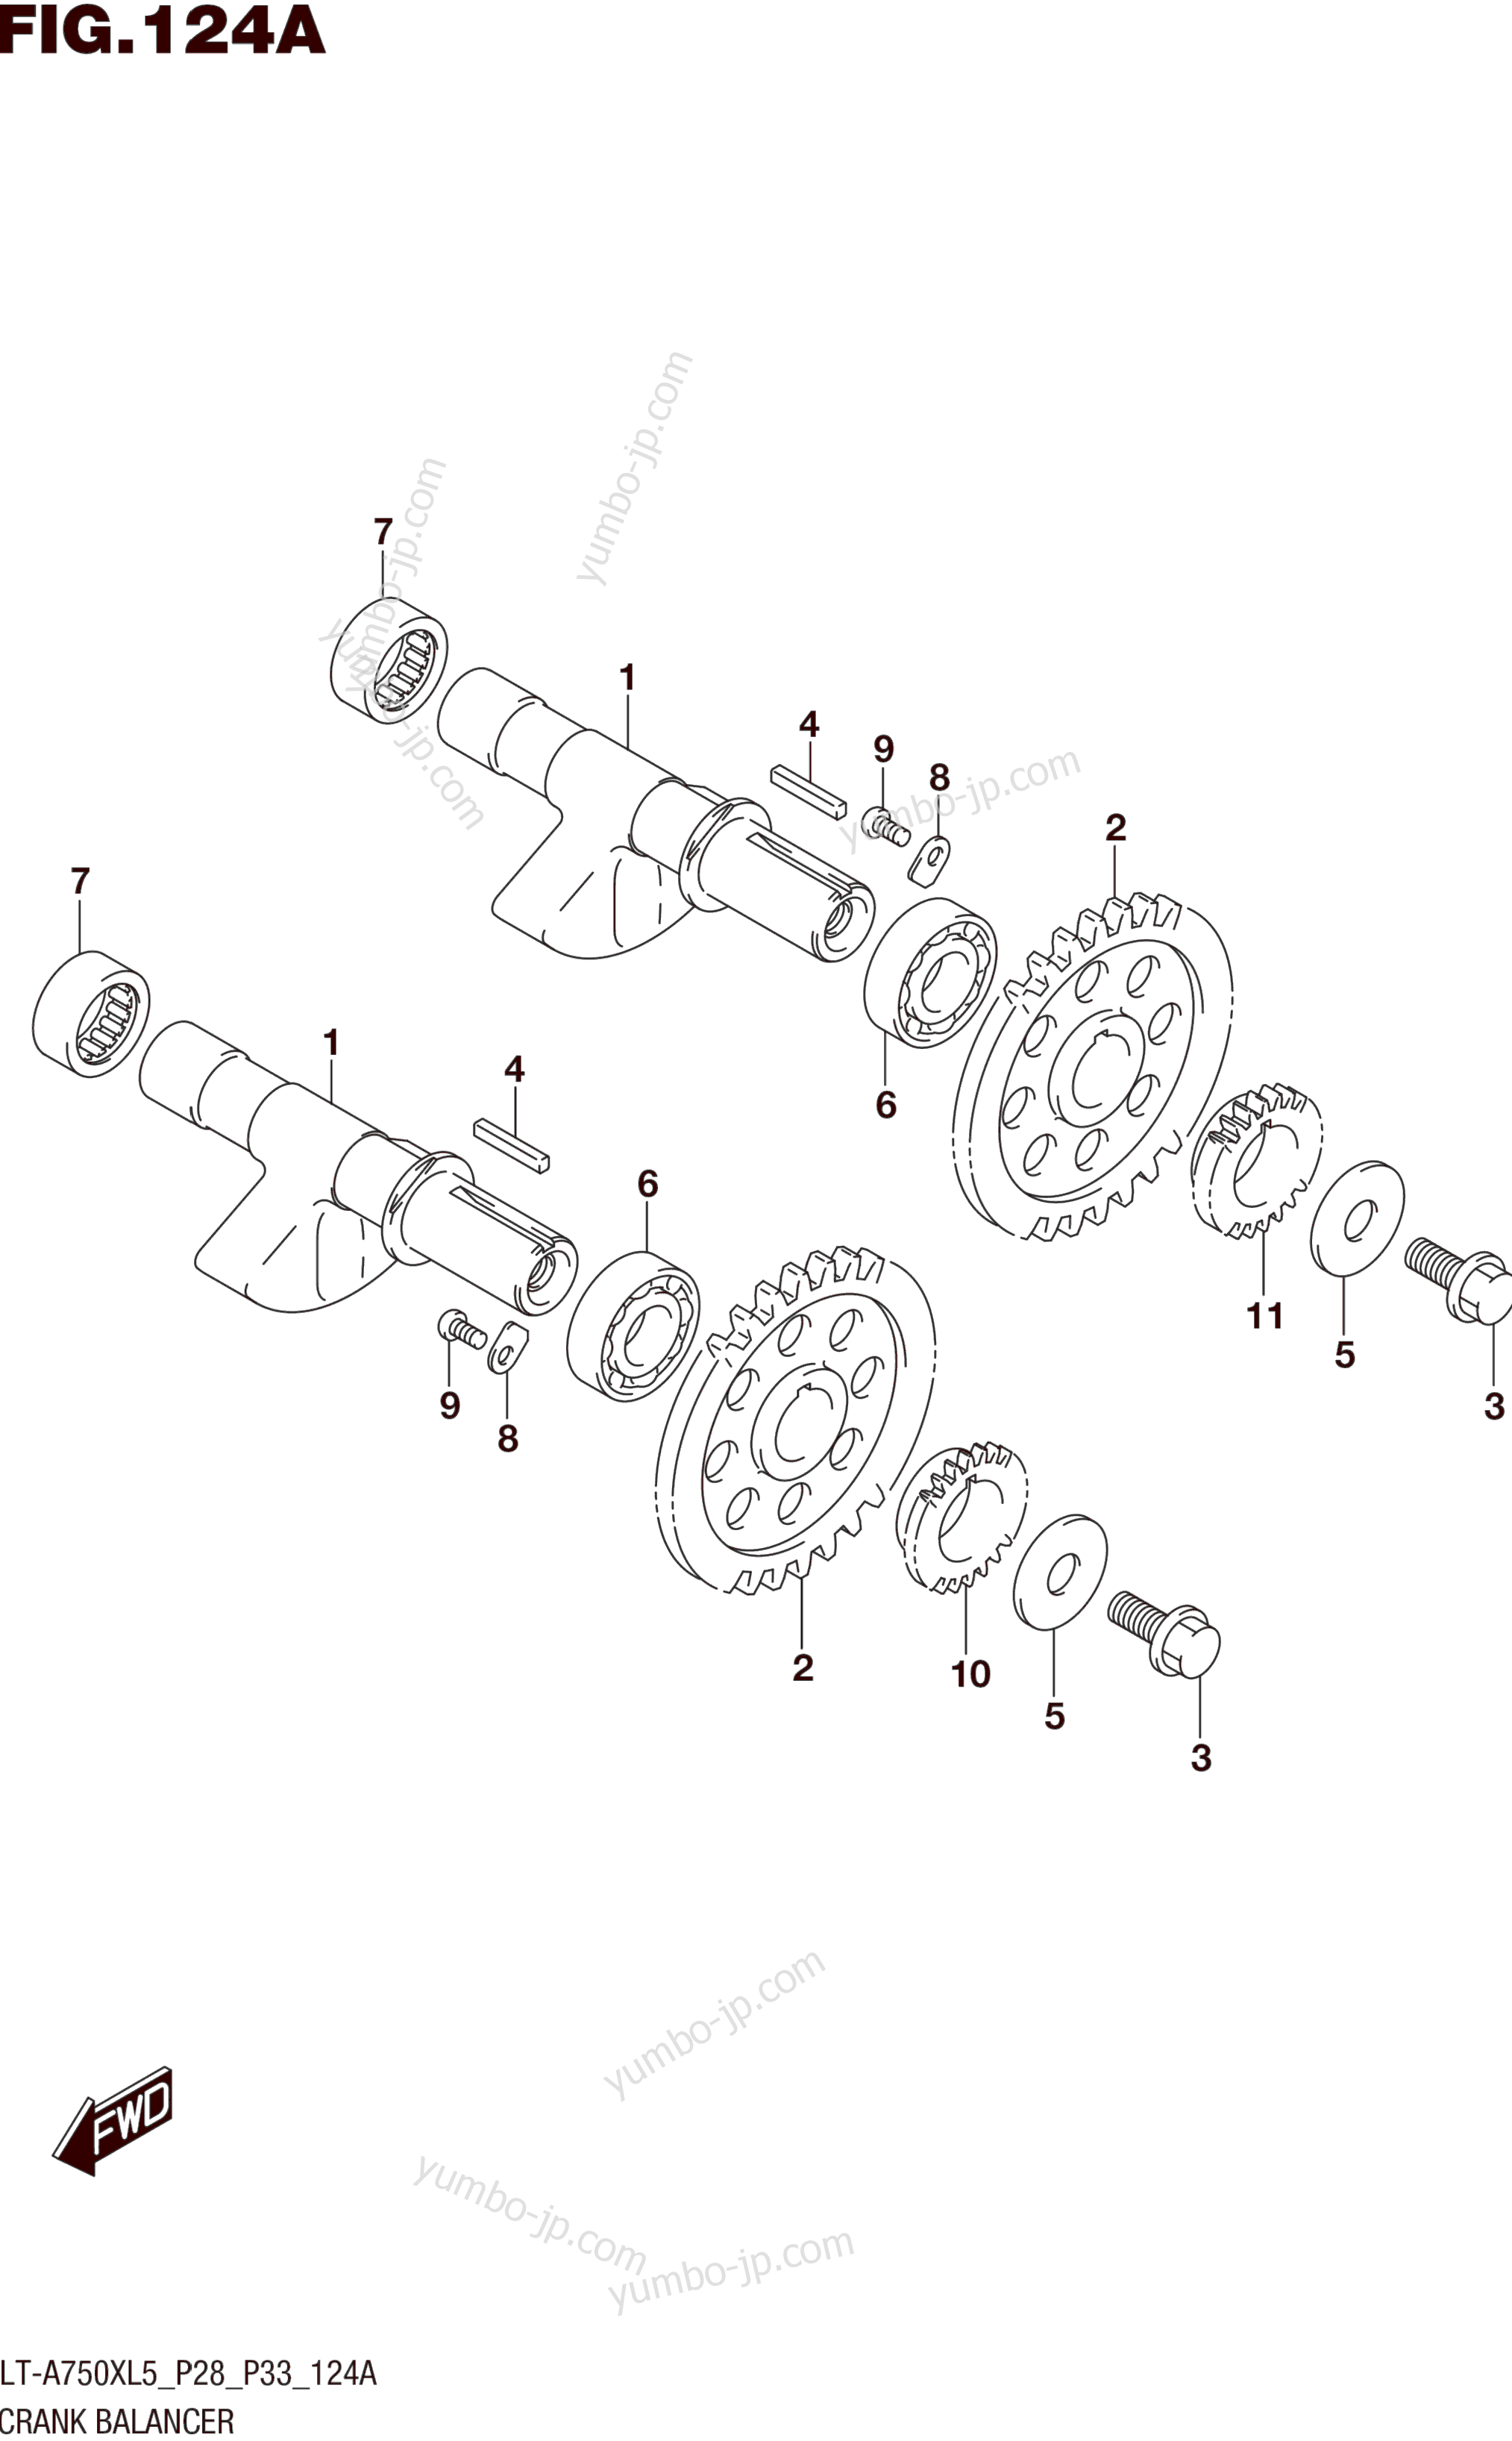 Crank Balancer for ATVs SUZUKI LT-A750X 2015 year